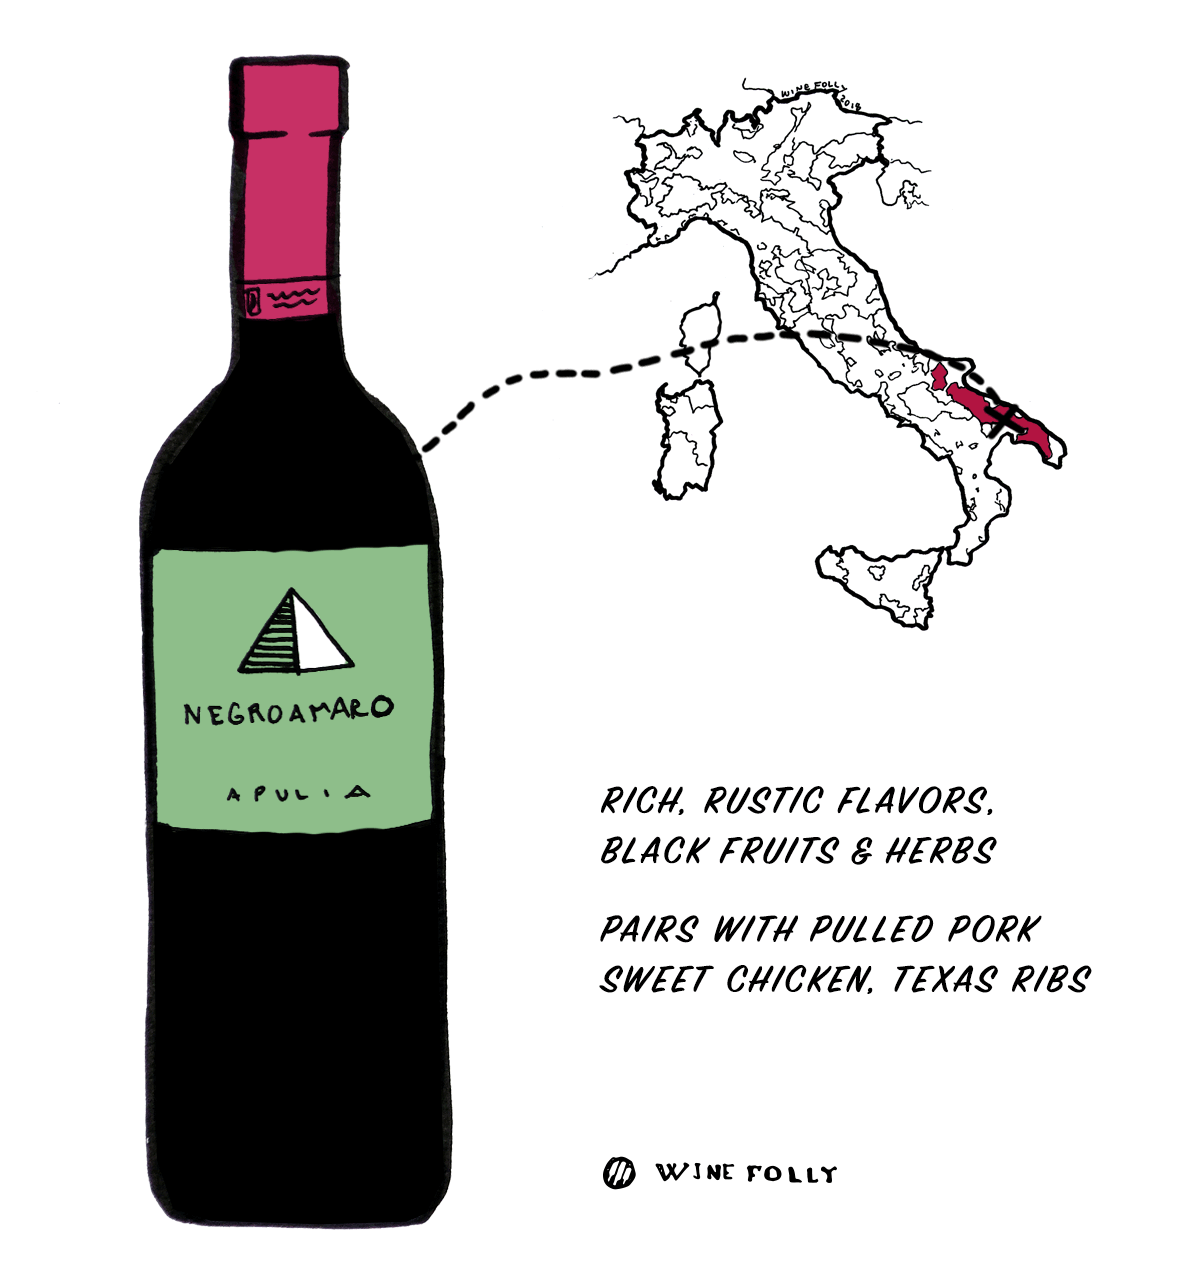 इटली से नीग्रोमारो रेड वाइन अंगूर - इतालवी शराब में शुरुआती के लिए बढ़िया विकल्प - वाइन फॉली द्वारा चित्रण